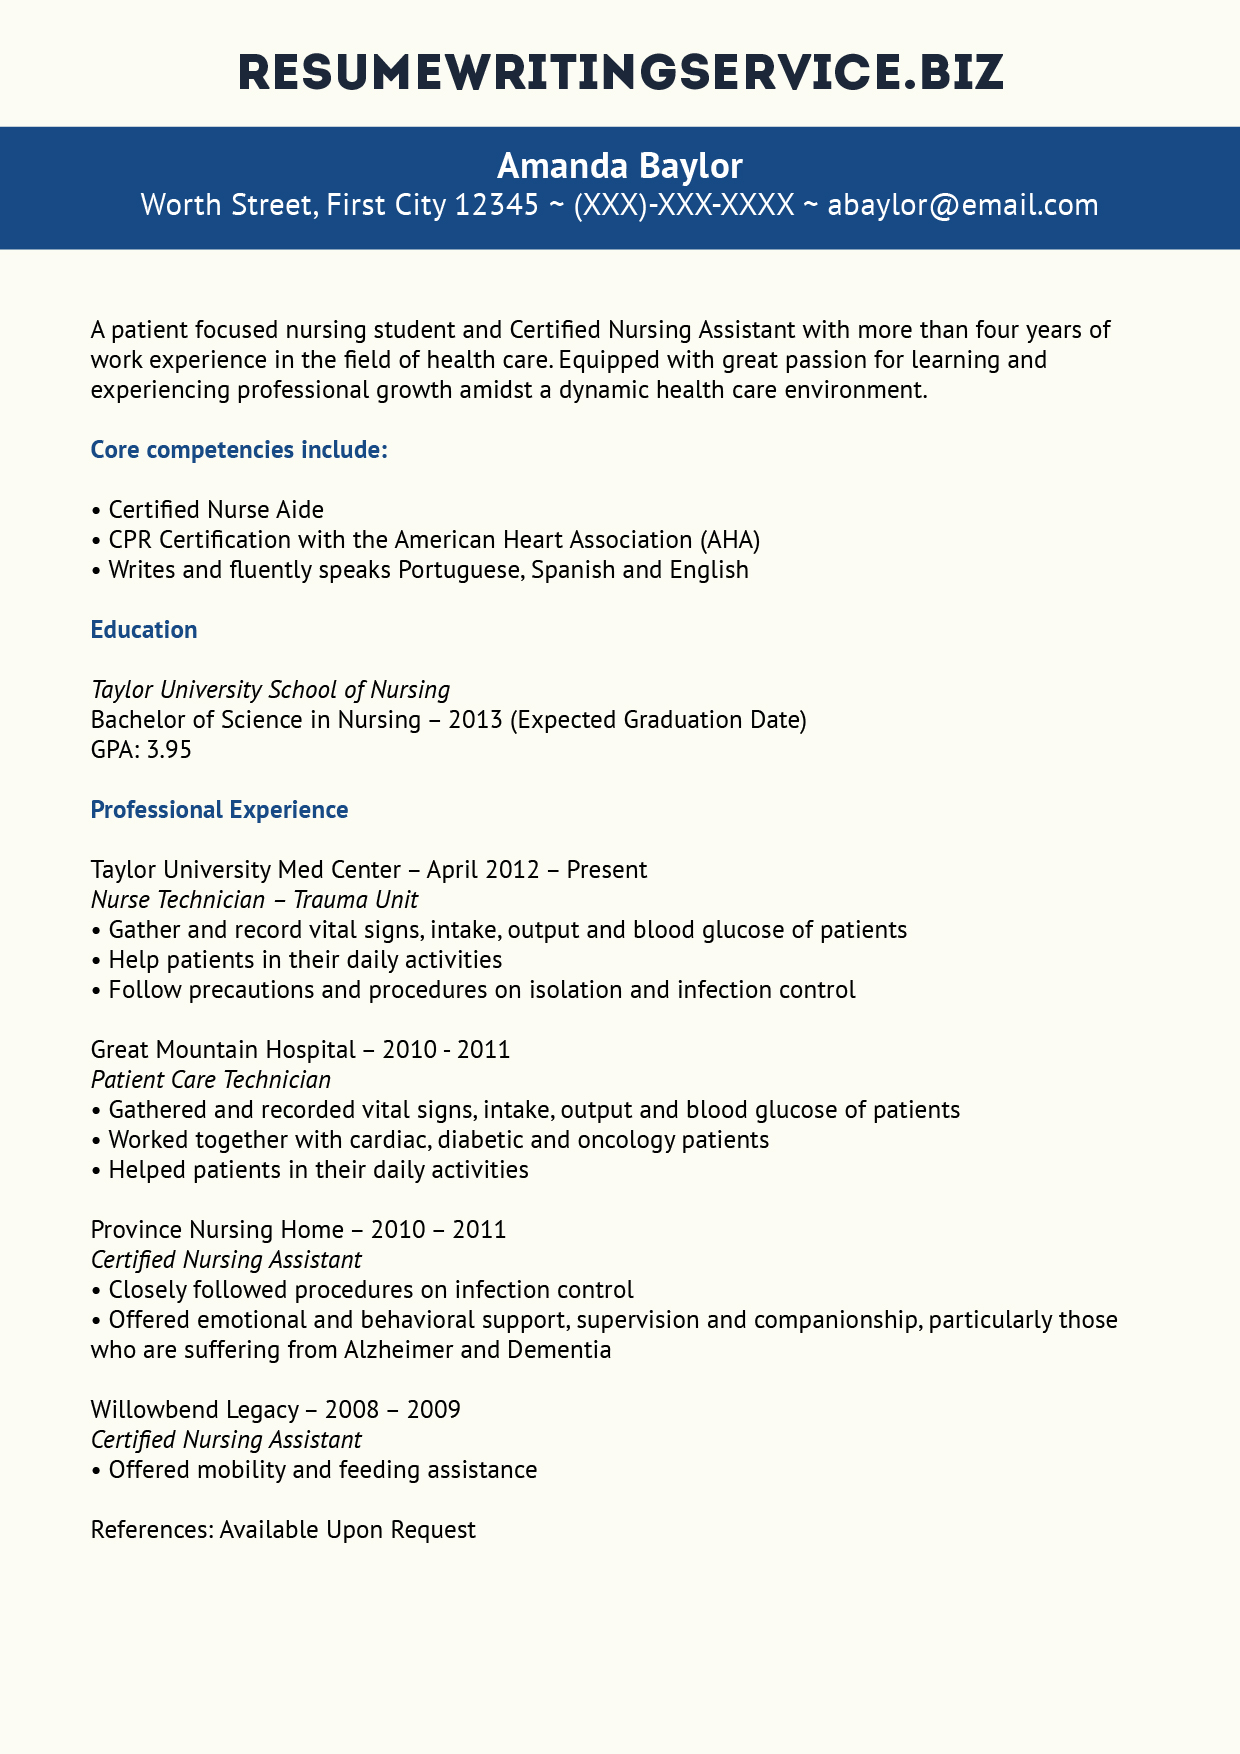 skills for resume for nursing student